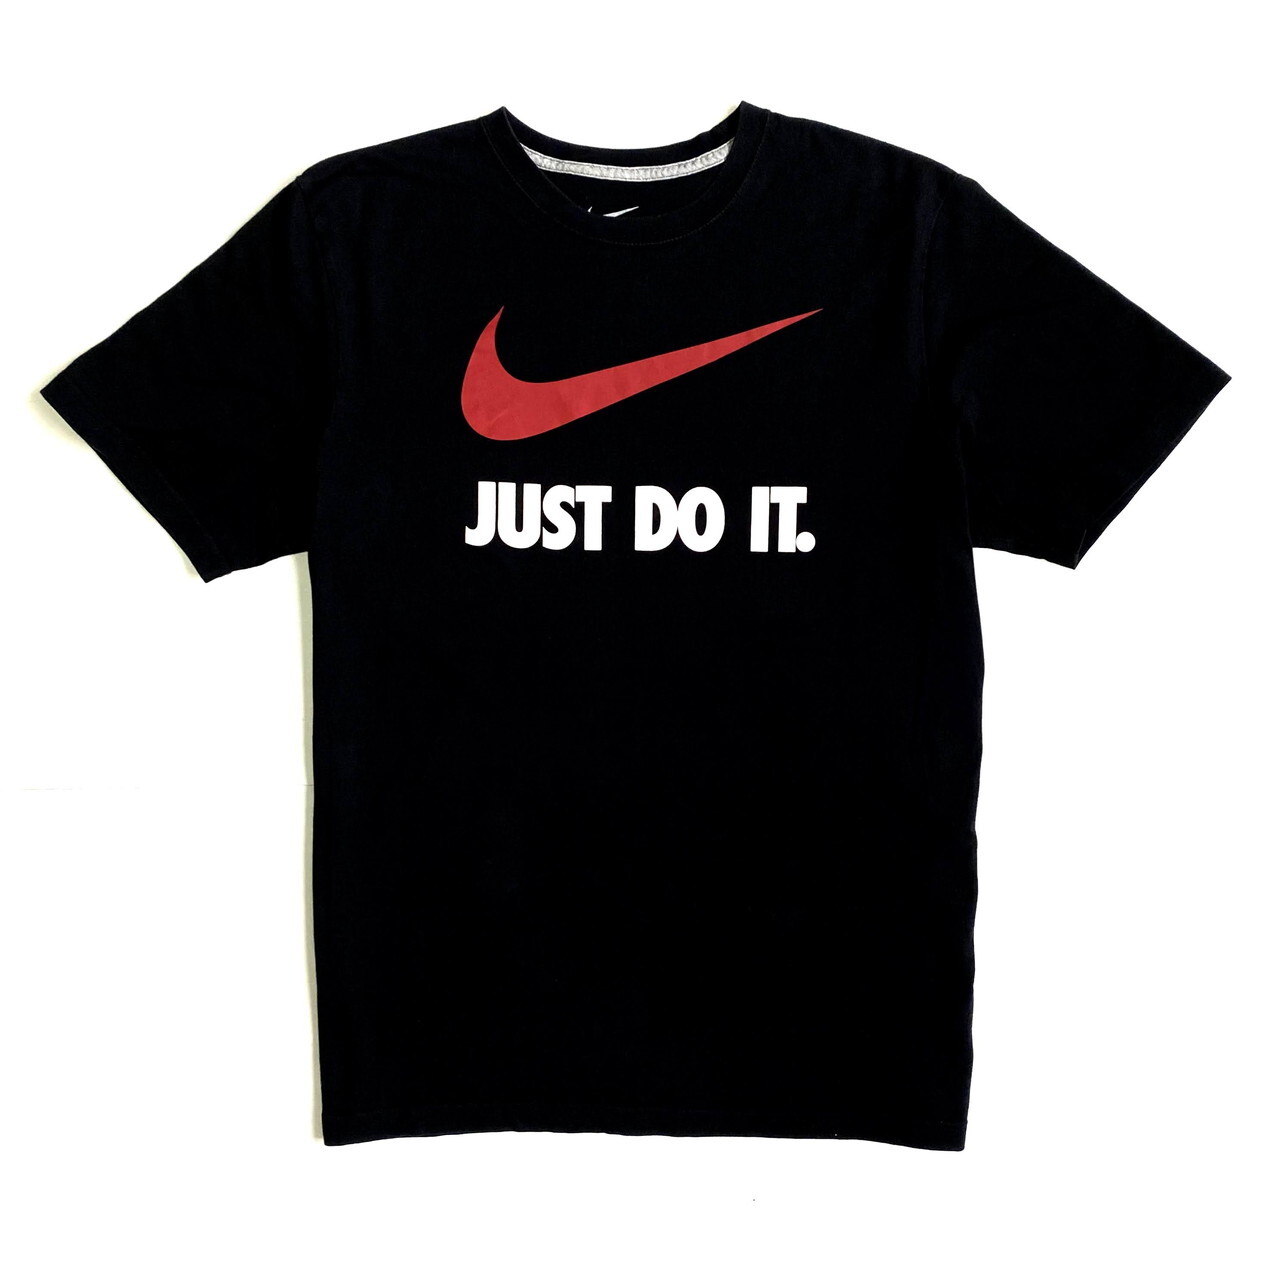 Nike ナイキ スウォッシュ Just Do It ロゴ Tシャツ メンズxl 古着 ブラック 黒色 Tシャツ Sa Cave 古着屋 公式 古着通販サイト